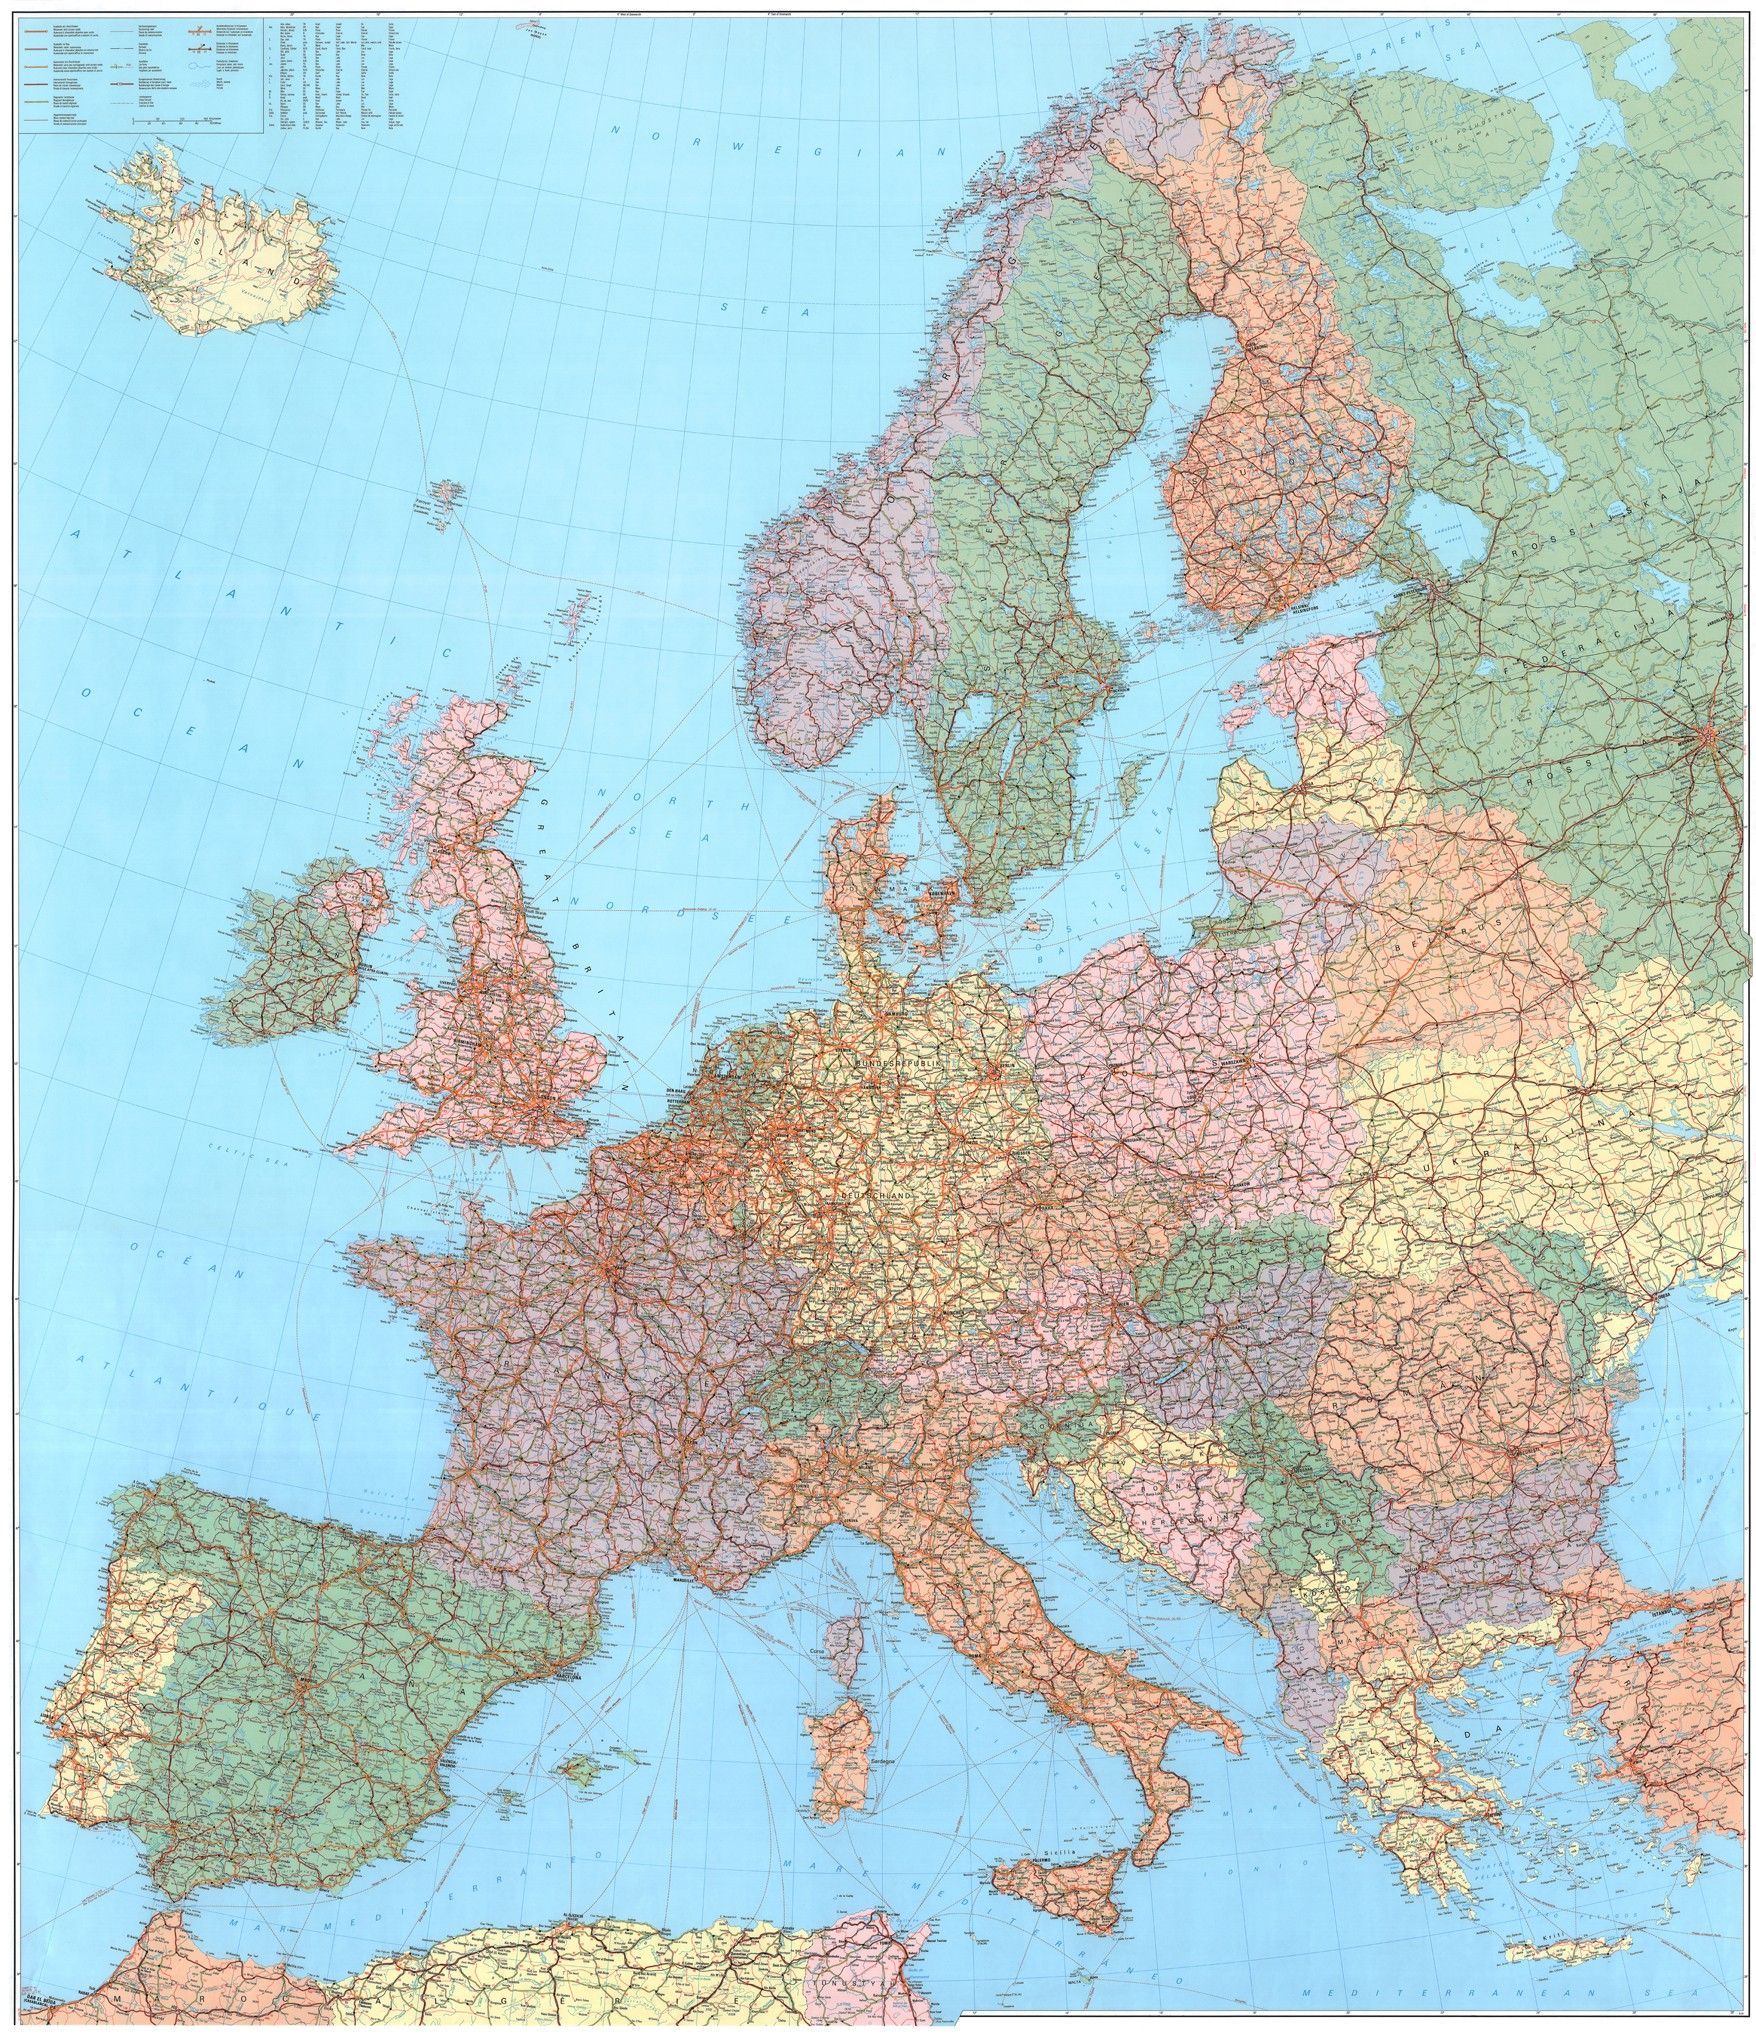 Europakaart D 1:2.750.000